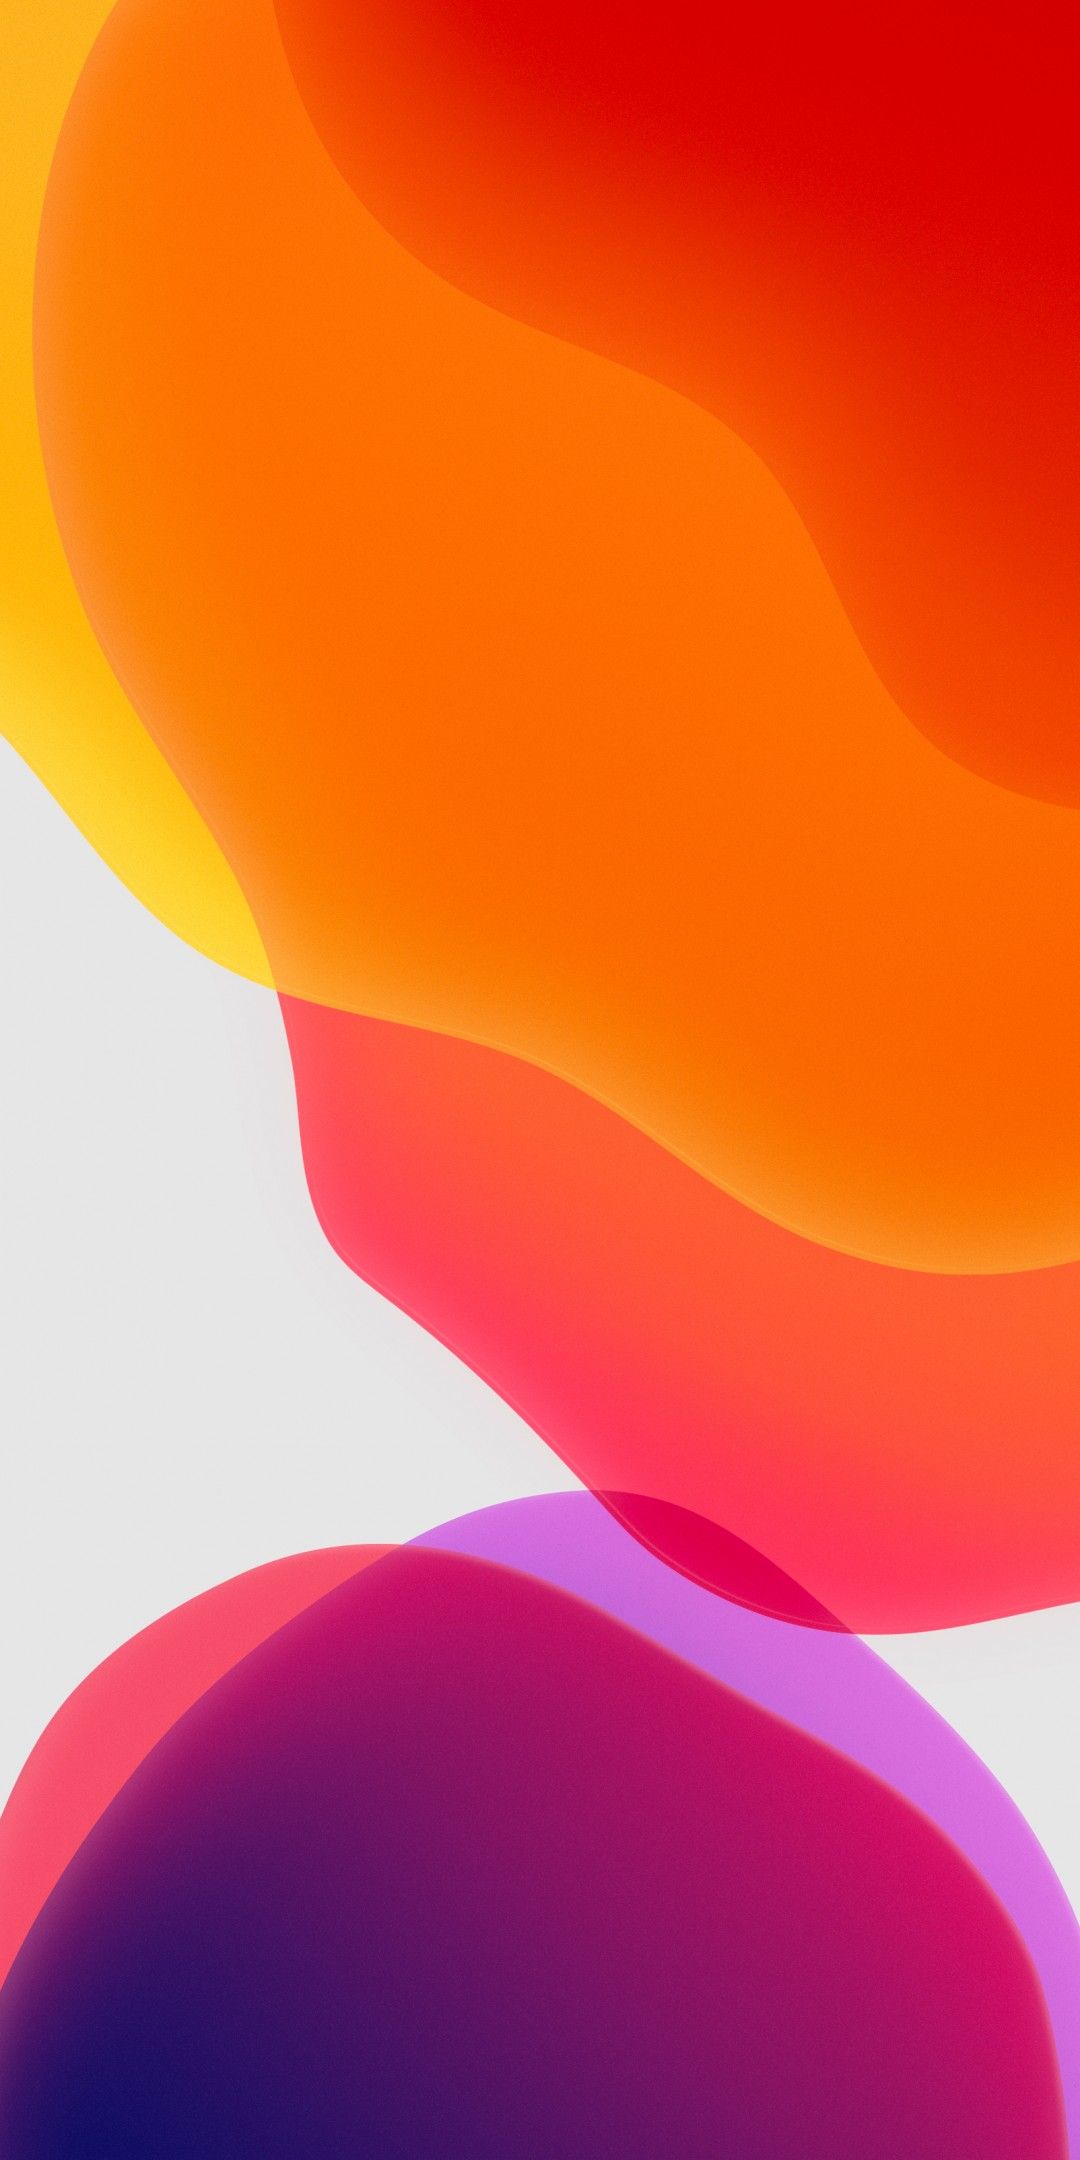 iPadOS Wallpaper 4K, Stock, Orange, White background, iPad, iOS Abstract